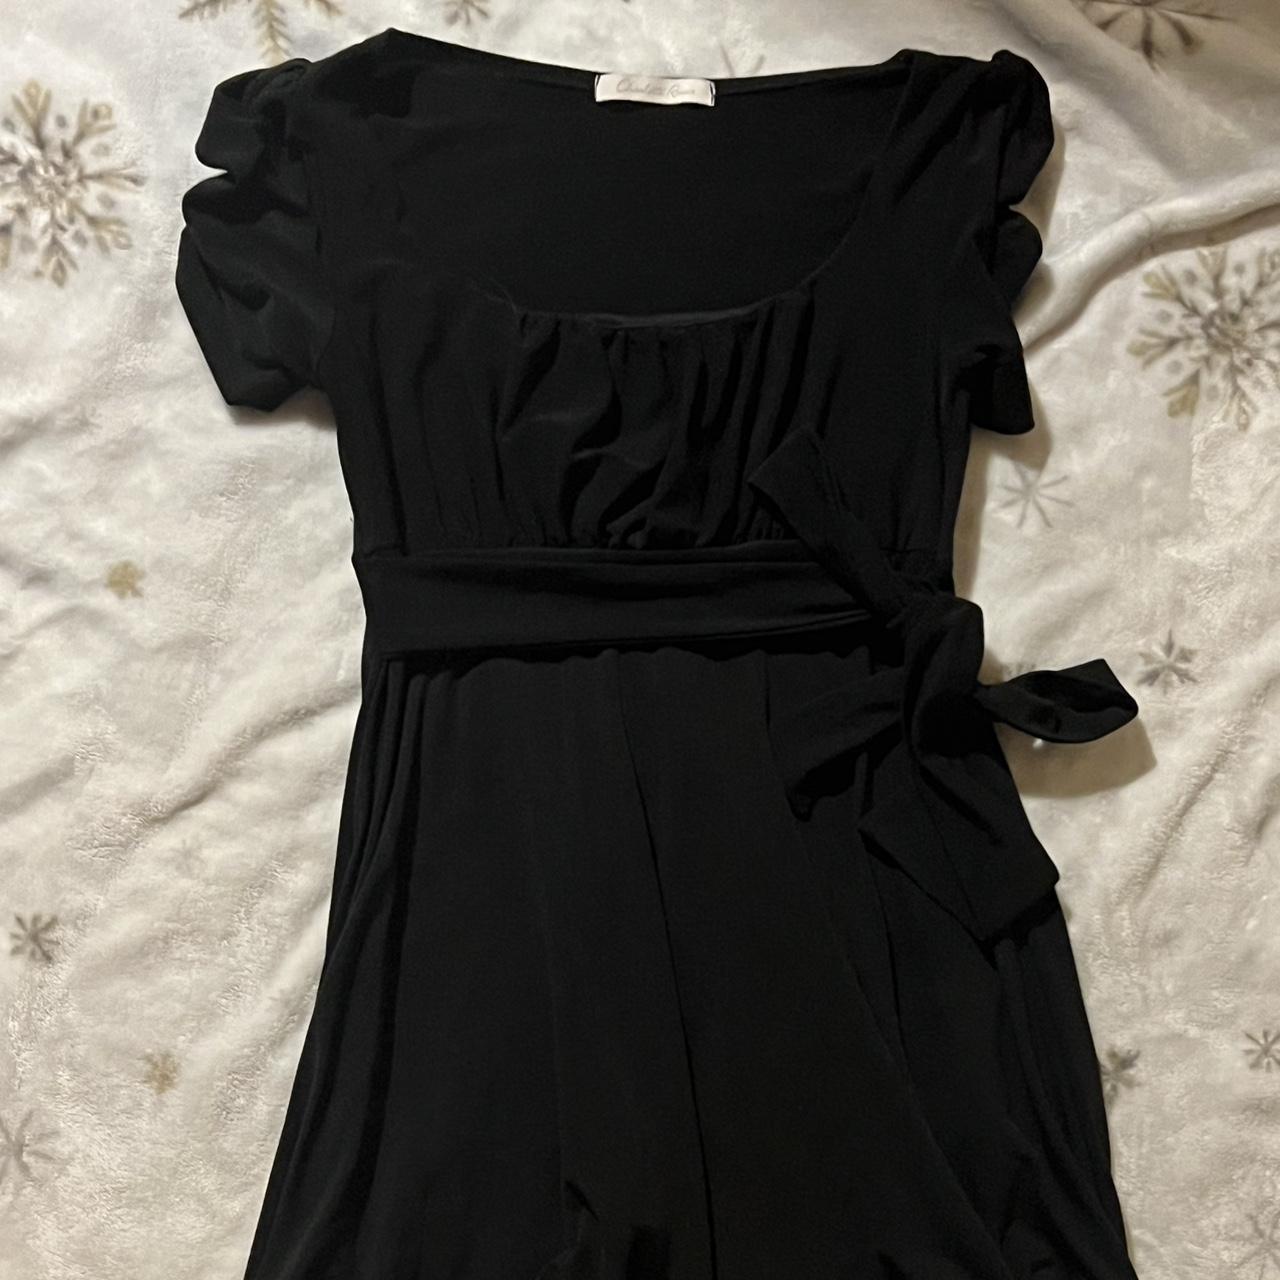 Charlotte Russe Women's Black Dress | Depop